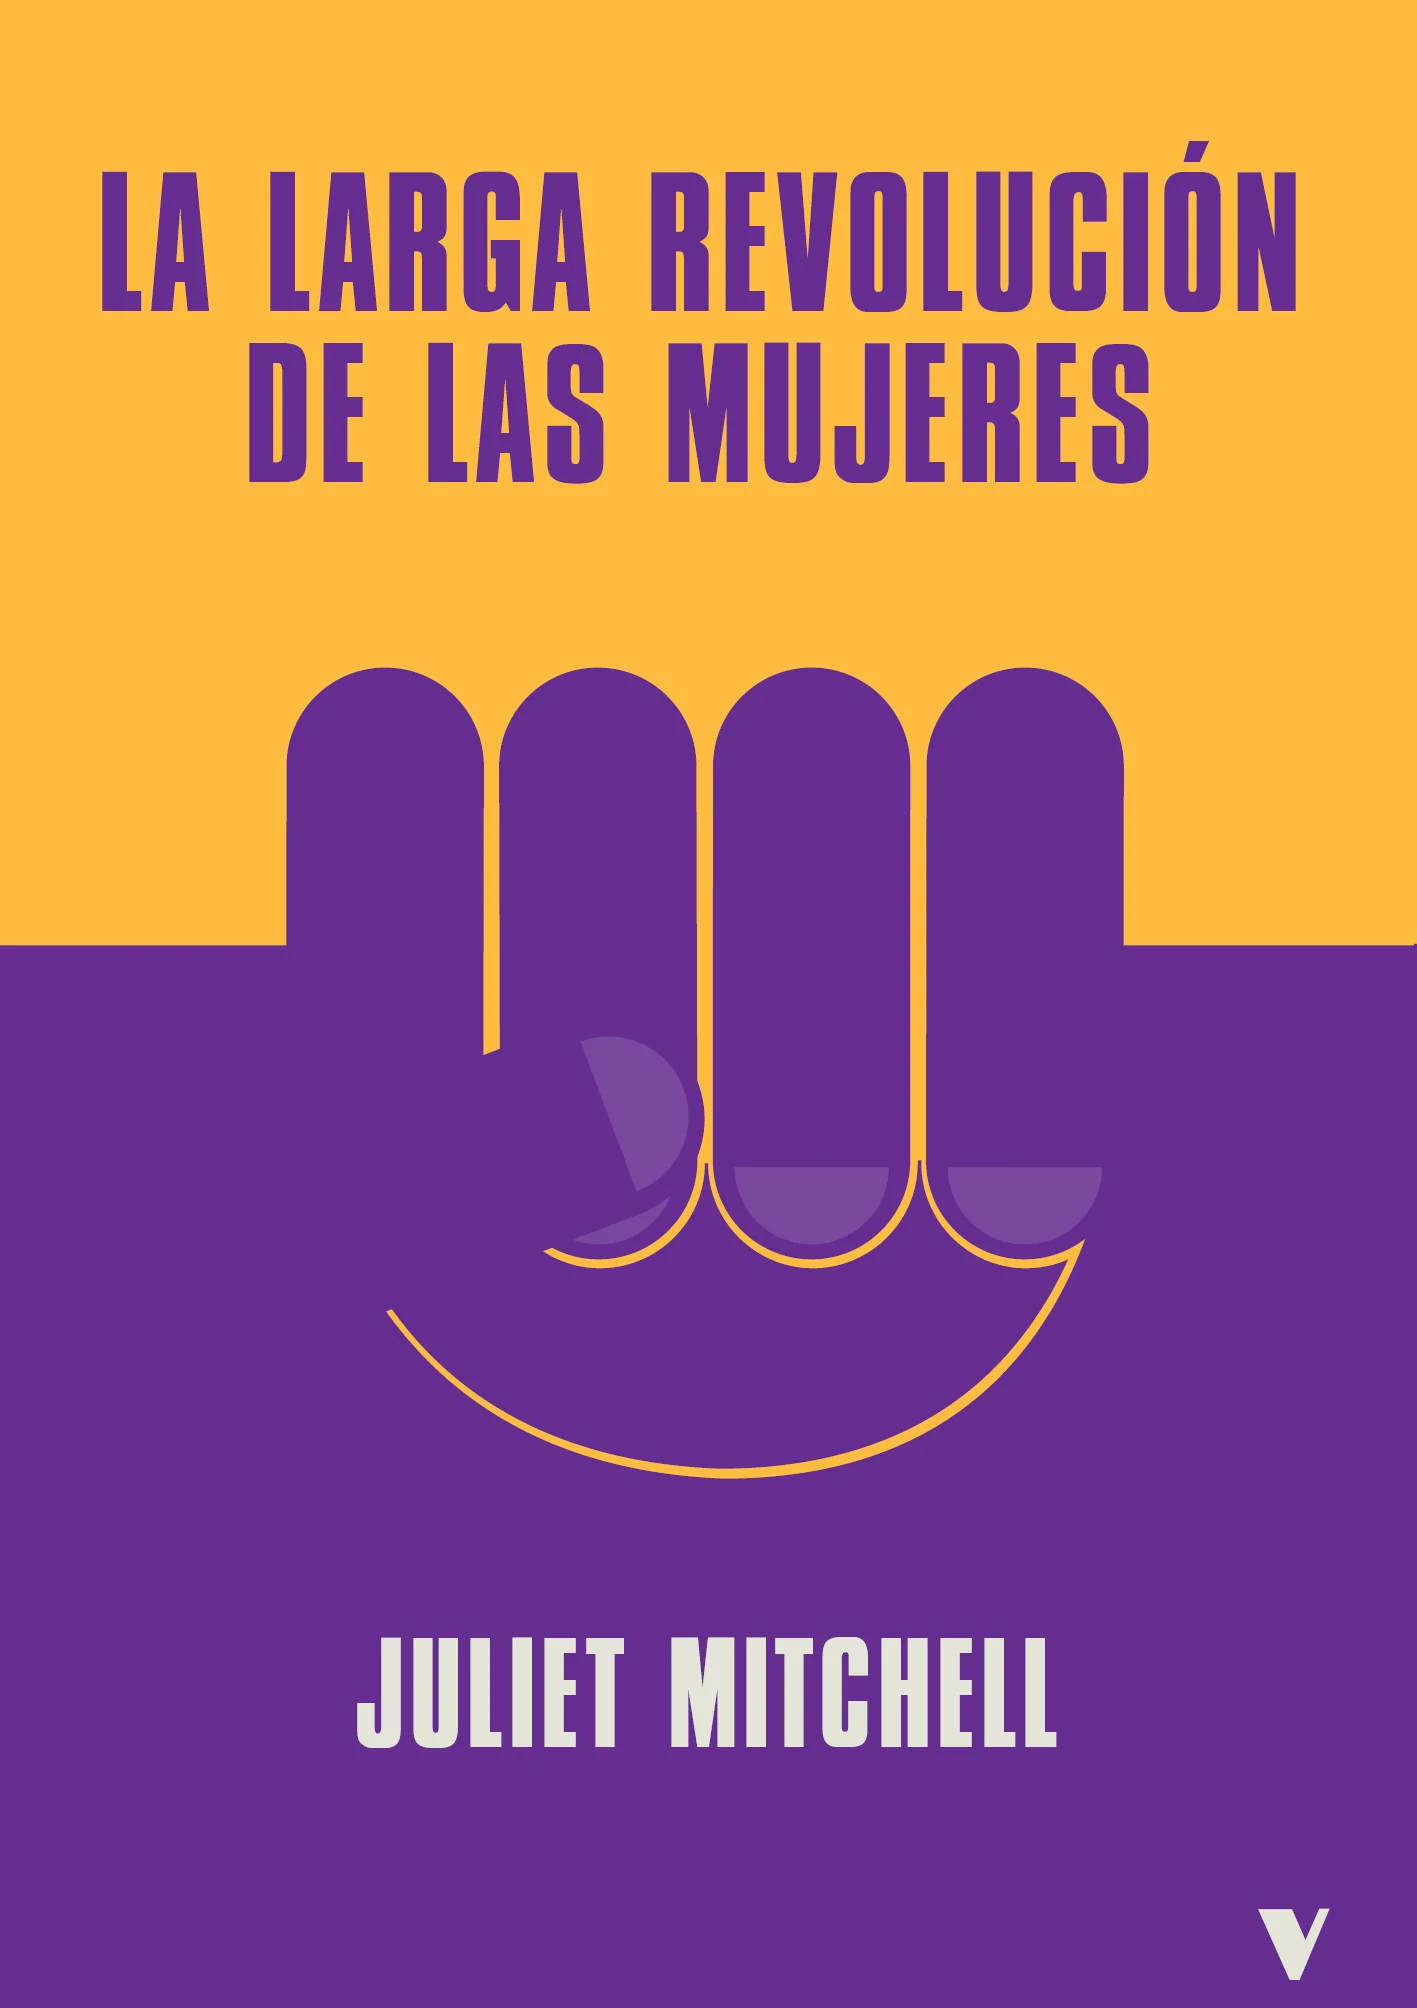 La larga revolución de las mujeres - Juliet Mitchell